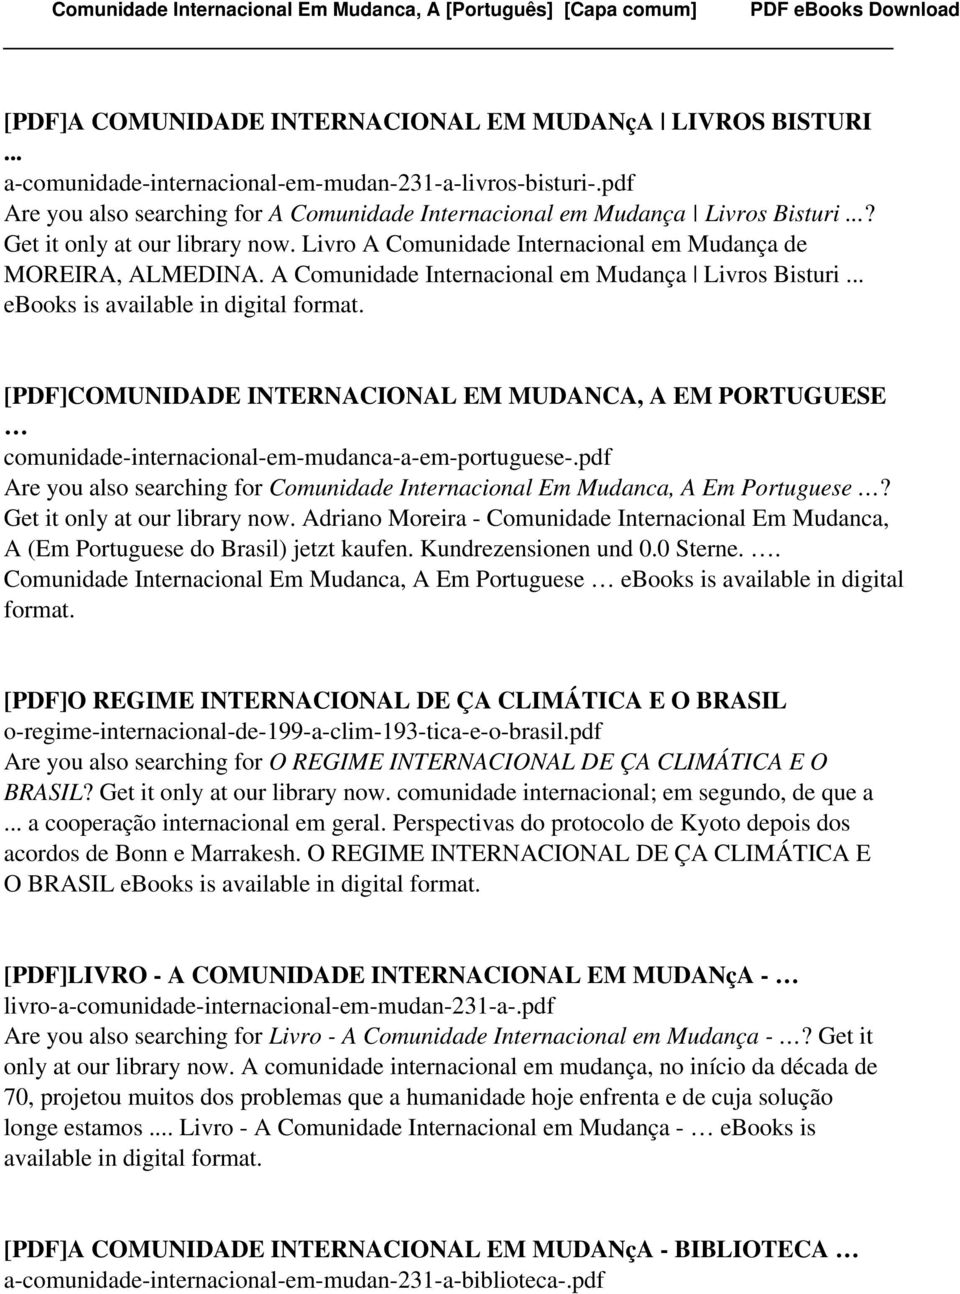 A Comunidade Internacional em Mudança Livros Bisturi... ebooks is [PDF]COMUNIDADE INTERNACIONAL EM MUDANCA, A EM PORTUGUESE comunidade-internacional-em-mudanca-a-em-portuguese-.